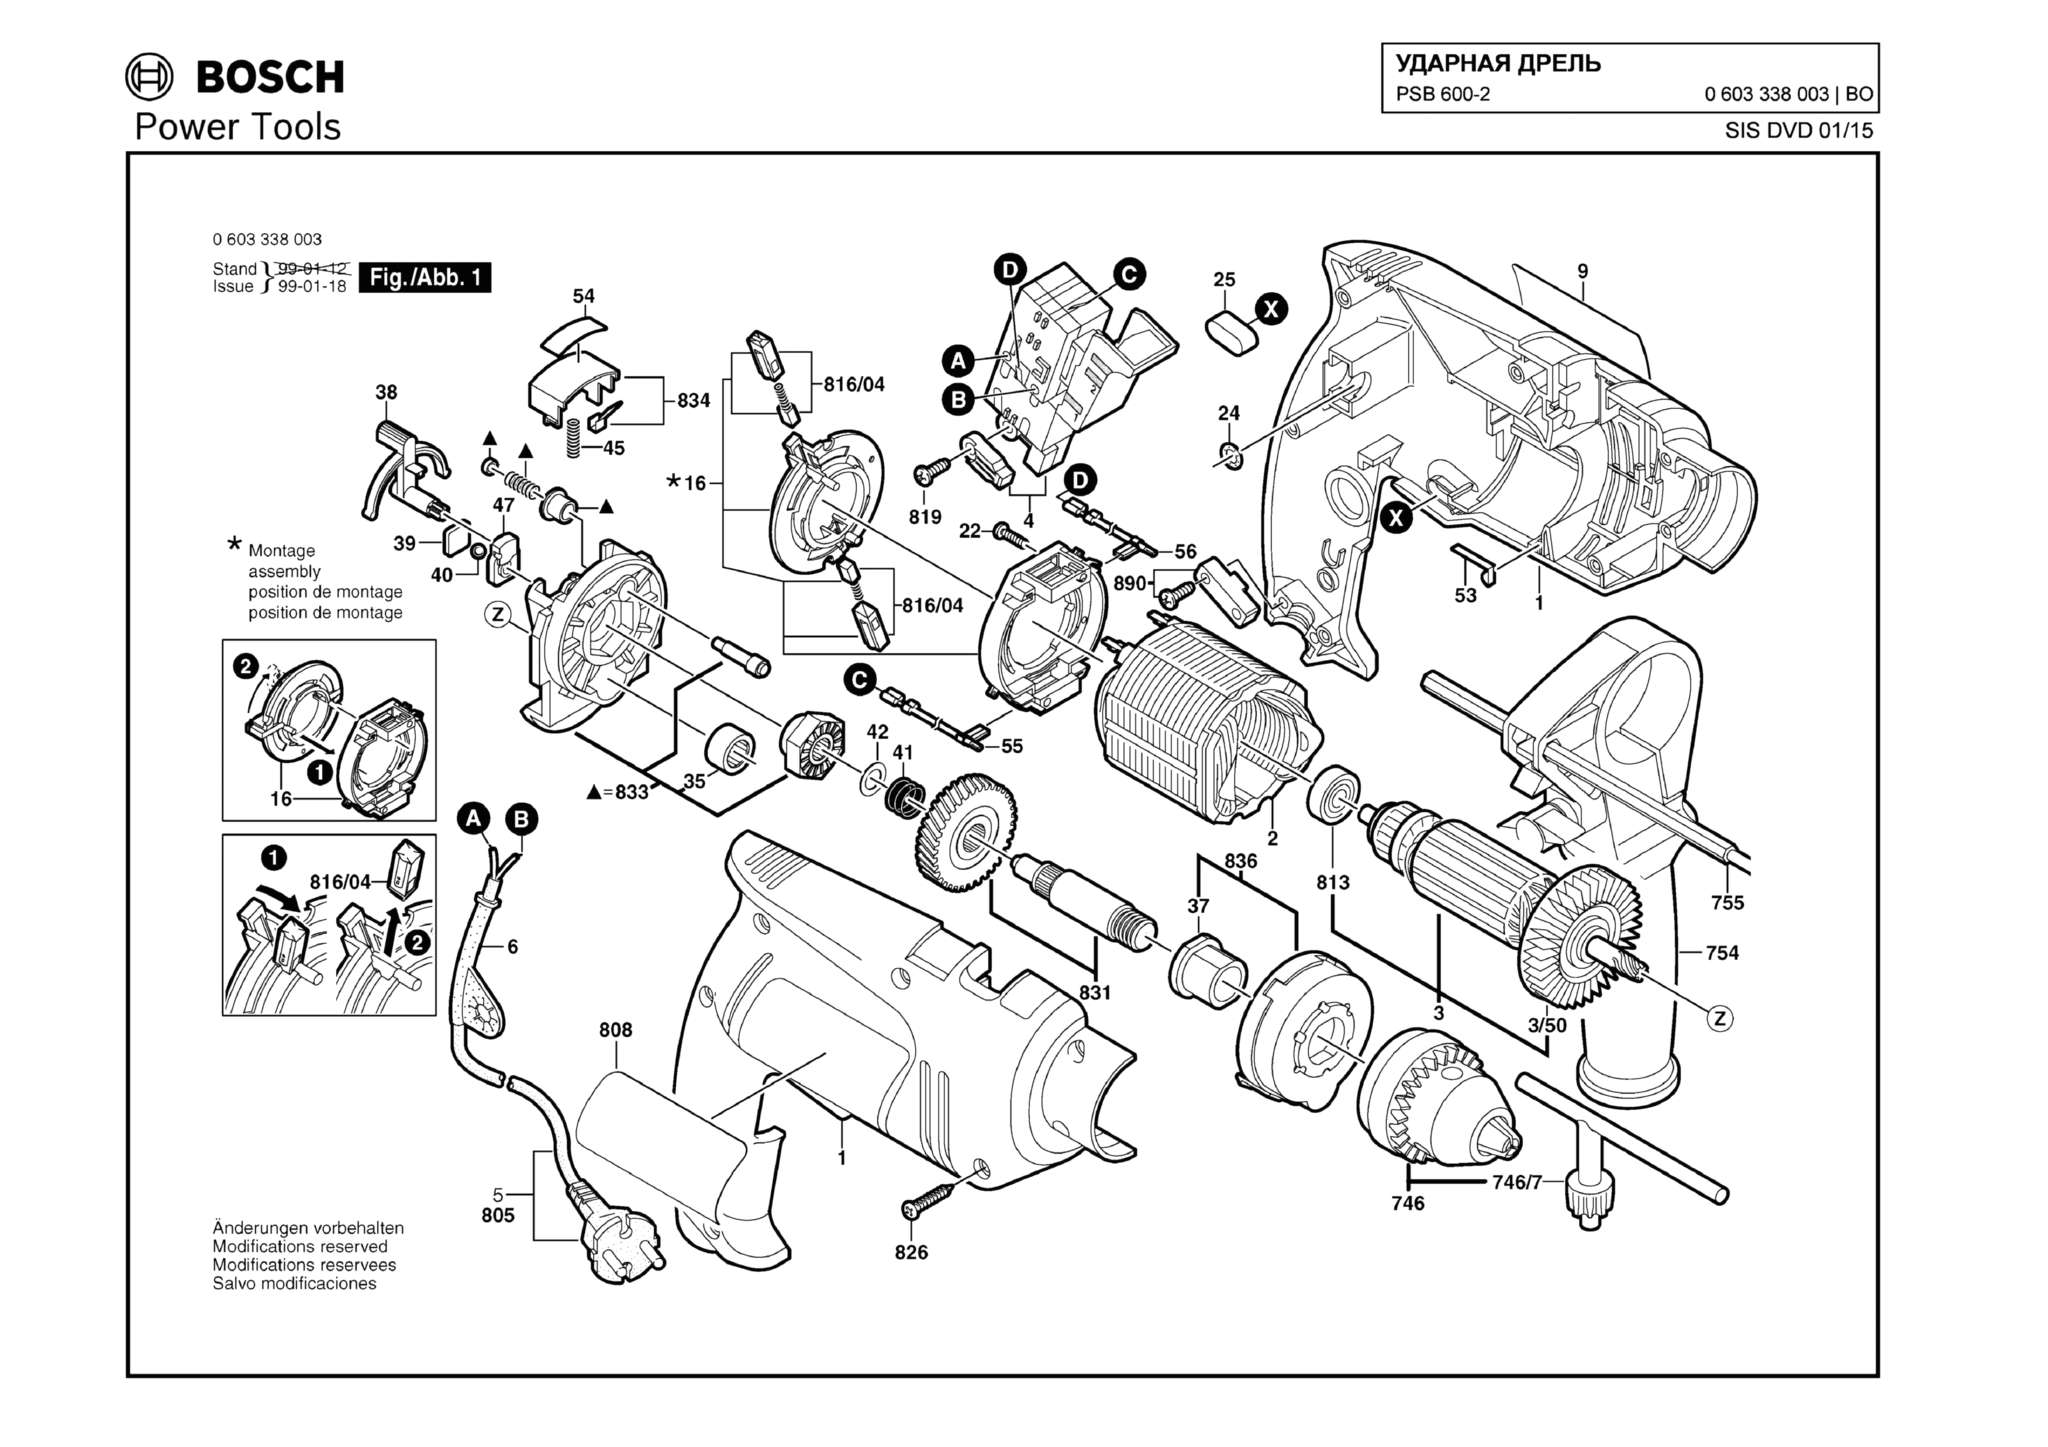 Запчасти, схема и деталировка Bosch PSB 600-2 (ТИП 0603338003)